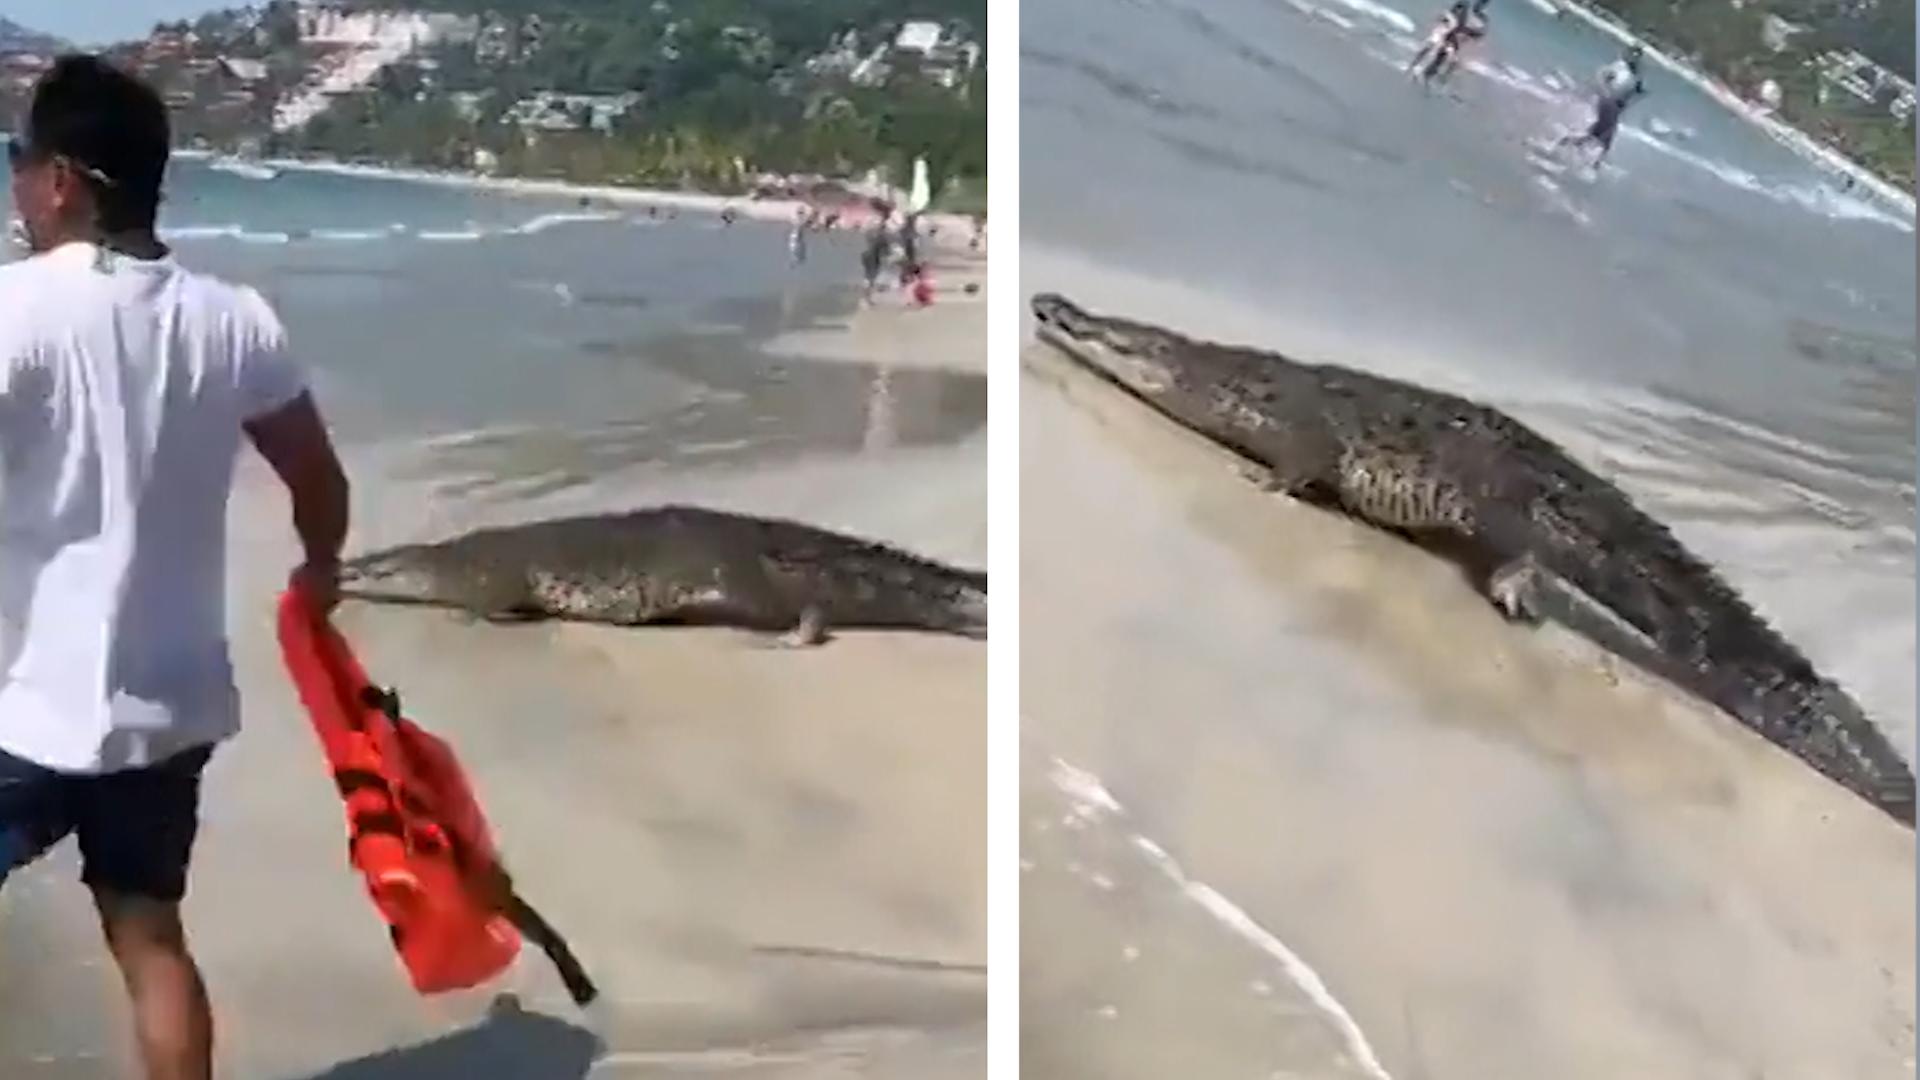 Krokodil-Alarm! Badegäste fliehen panisch aus Meer Zaun durchbrochen